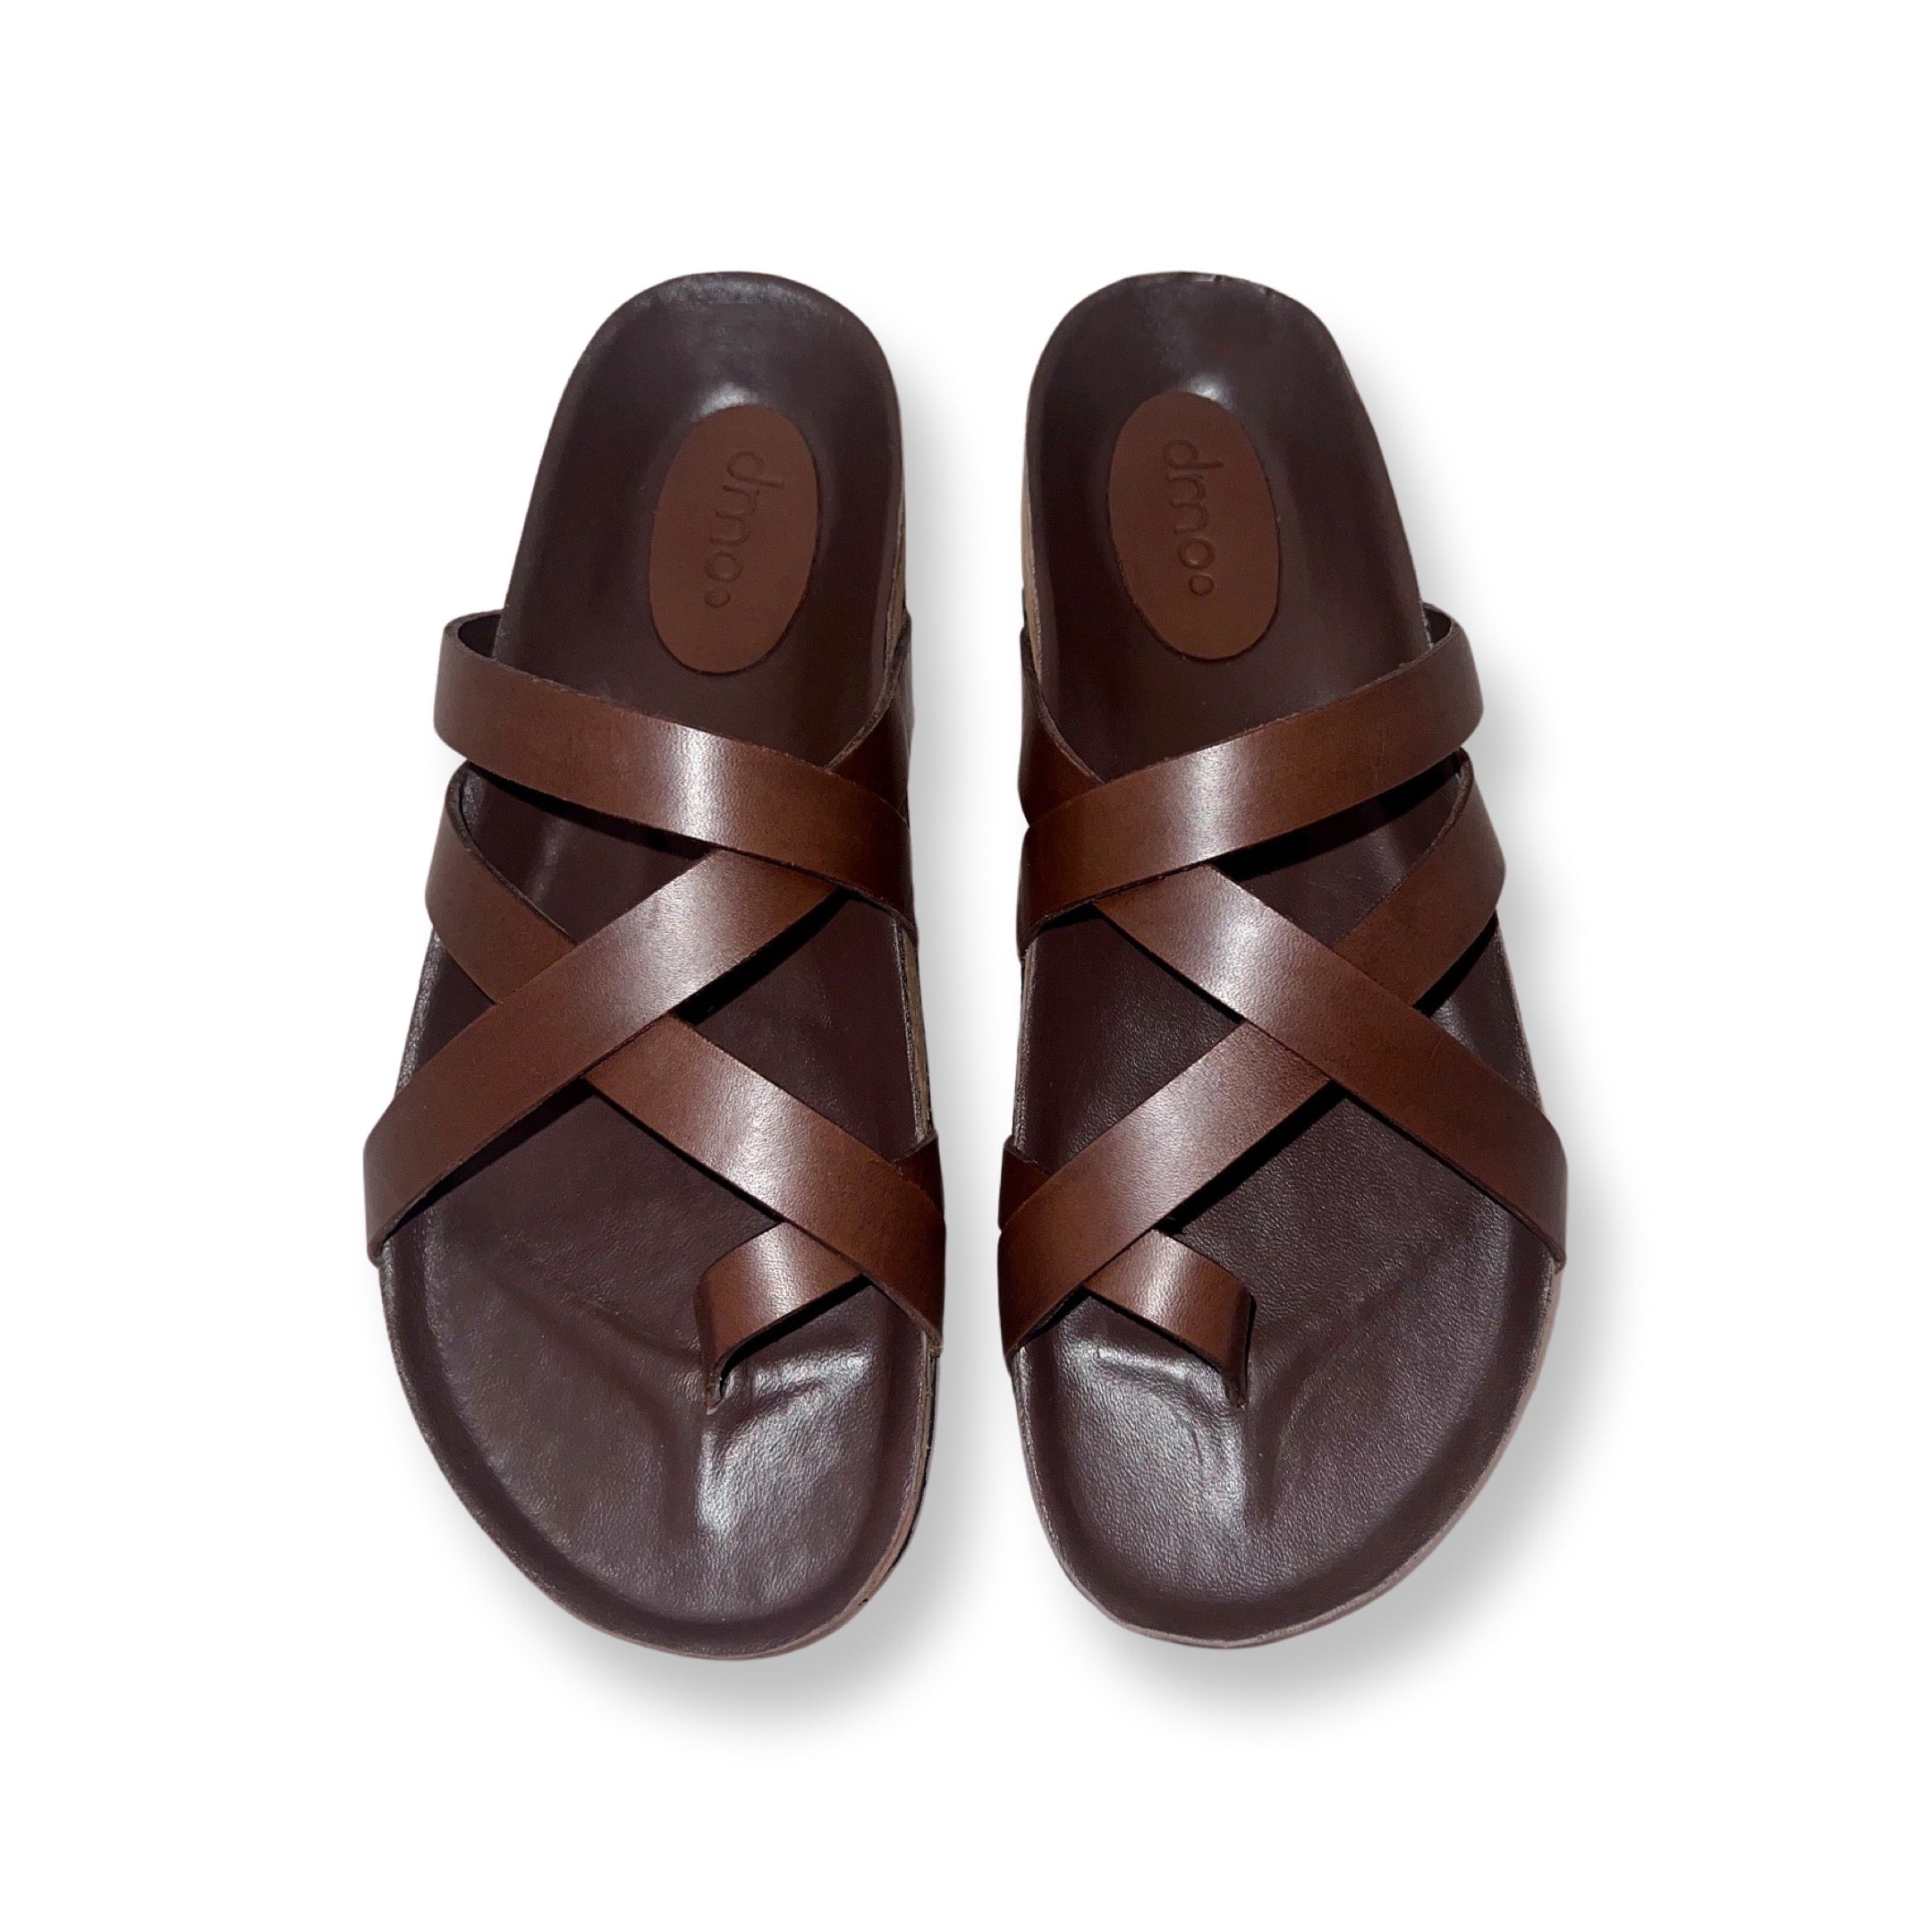 Estatos Casual Wear Ladies Brown Wedge Heel Sandal, Size: EUR 36-41 at Rs  549/pair in New Delhi